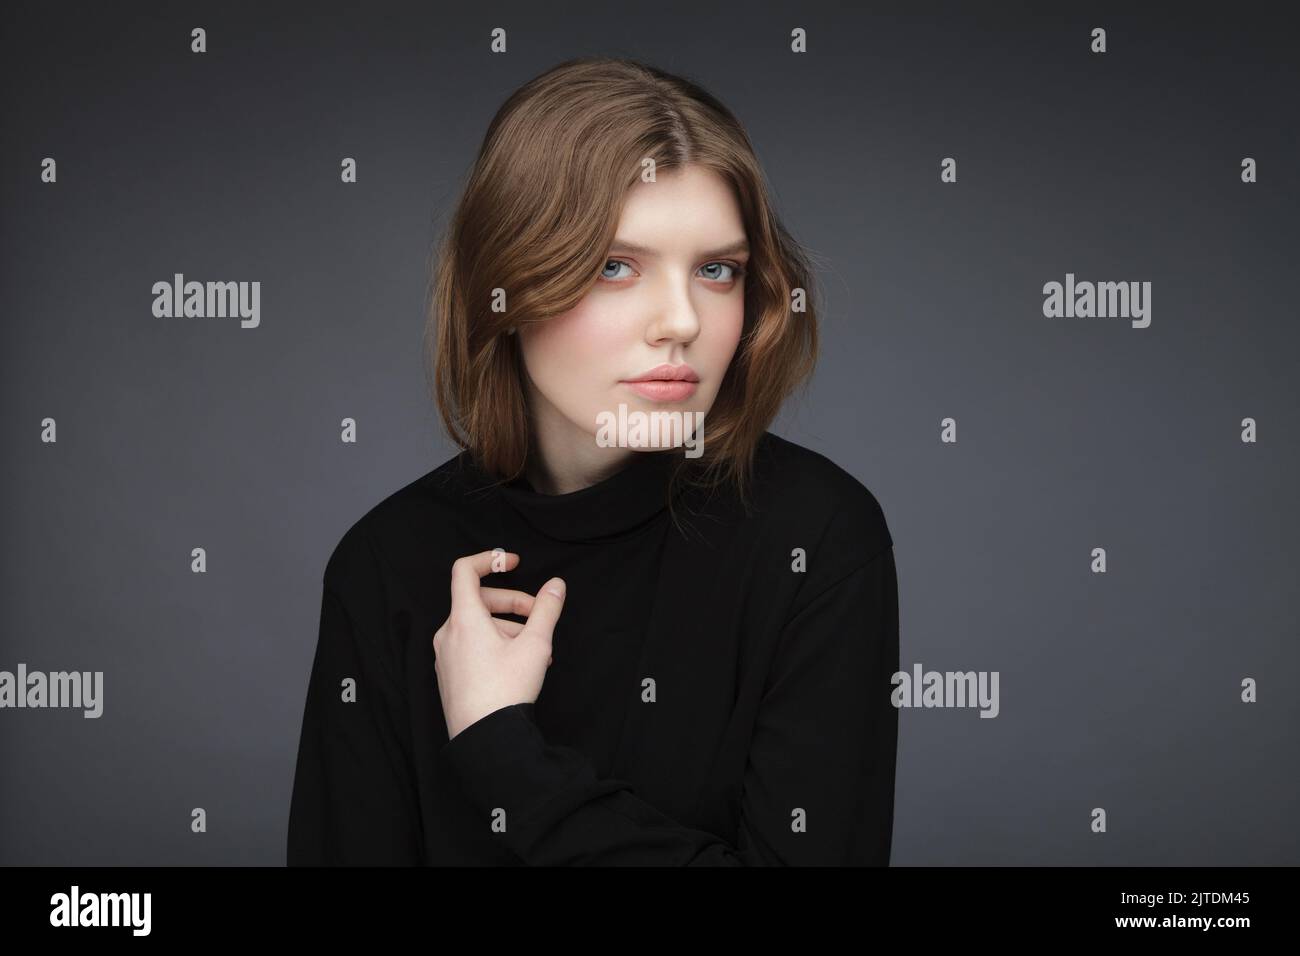 Une jeune femme portrait de studio portant une chemise à col roulé noire. Image de jeune fille charmante. Banque D'Images